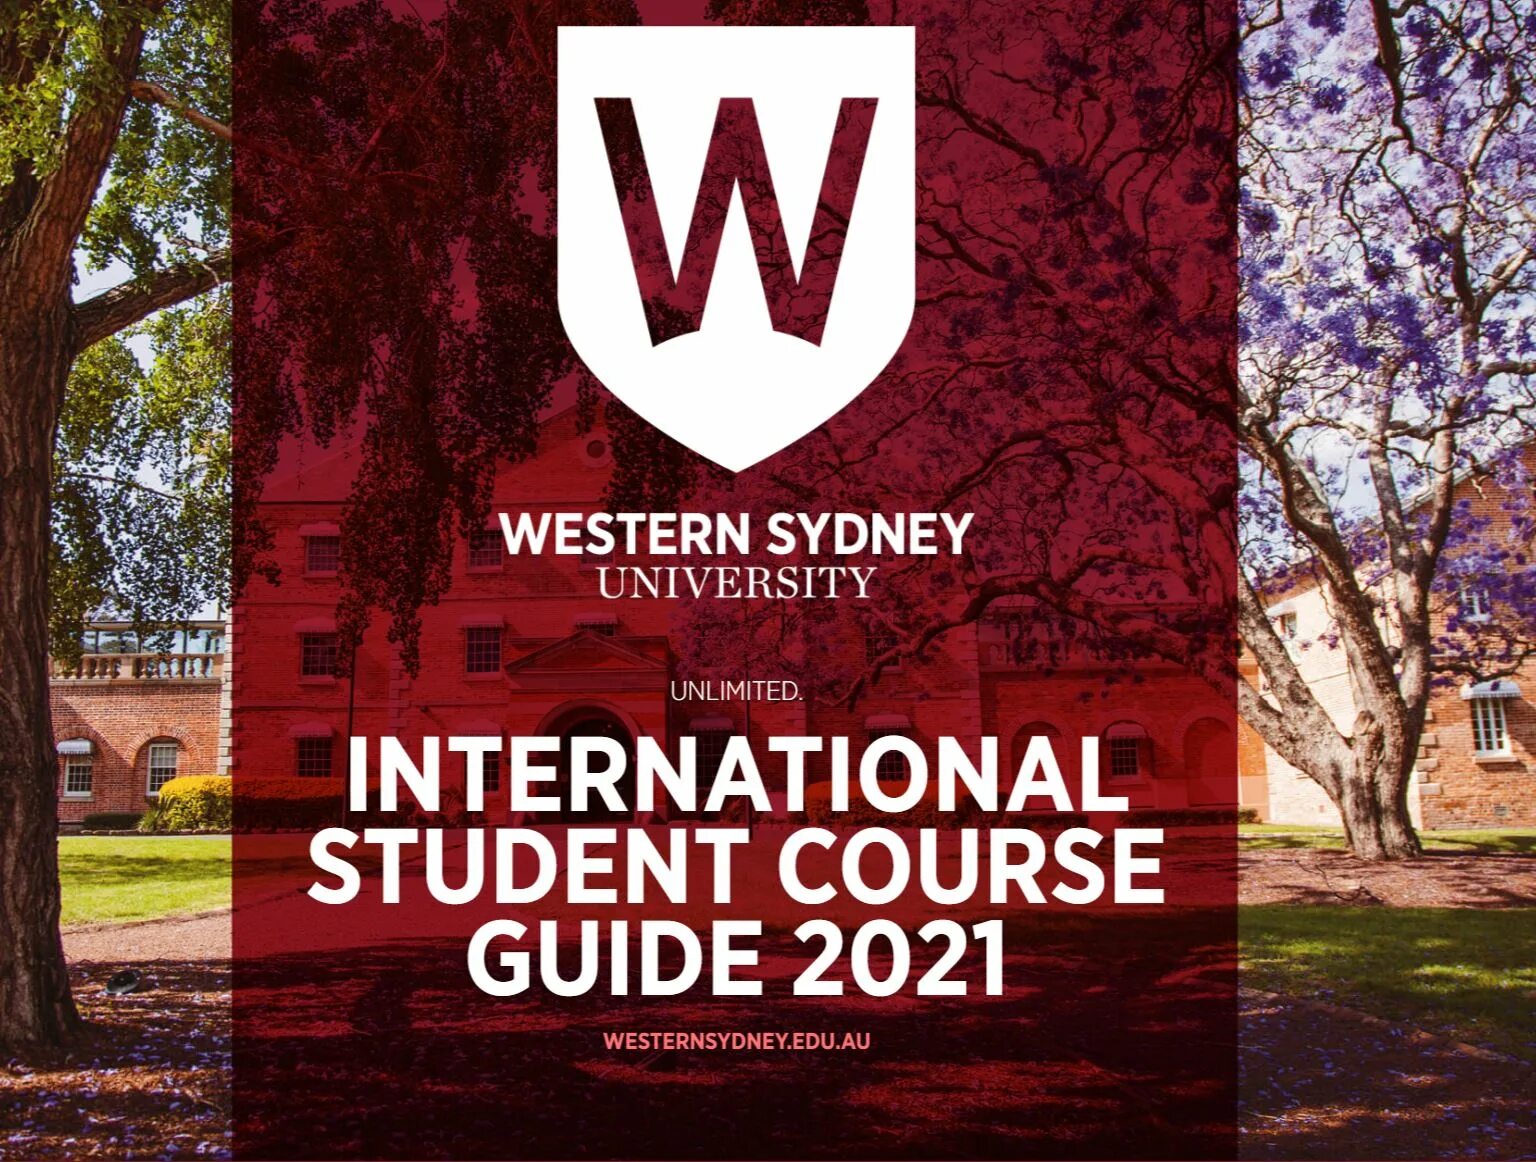 Western Sydney University. University of Sydney. Western Sydney University logo. Parramatta City Western Sydney University Campus. University unit